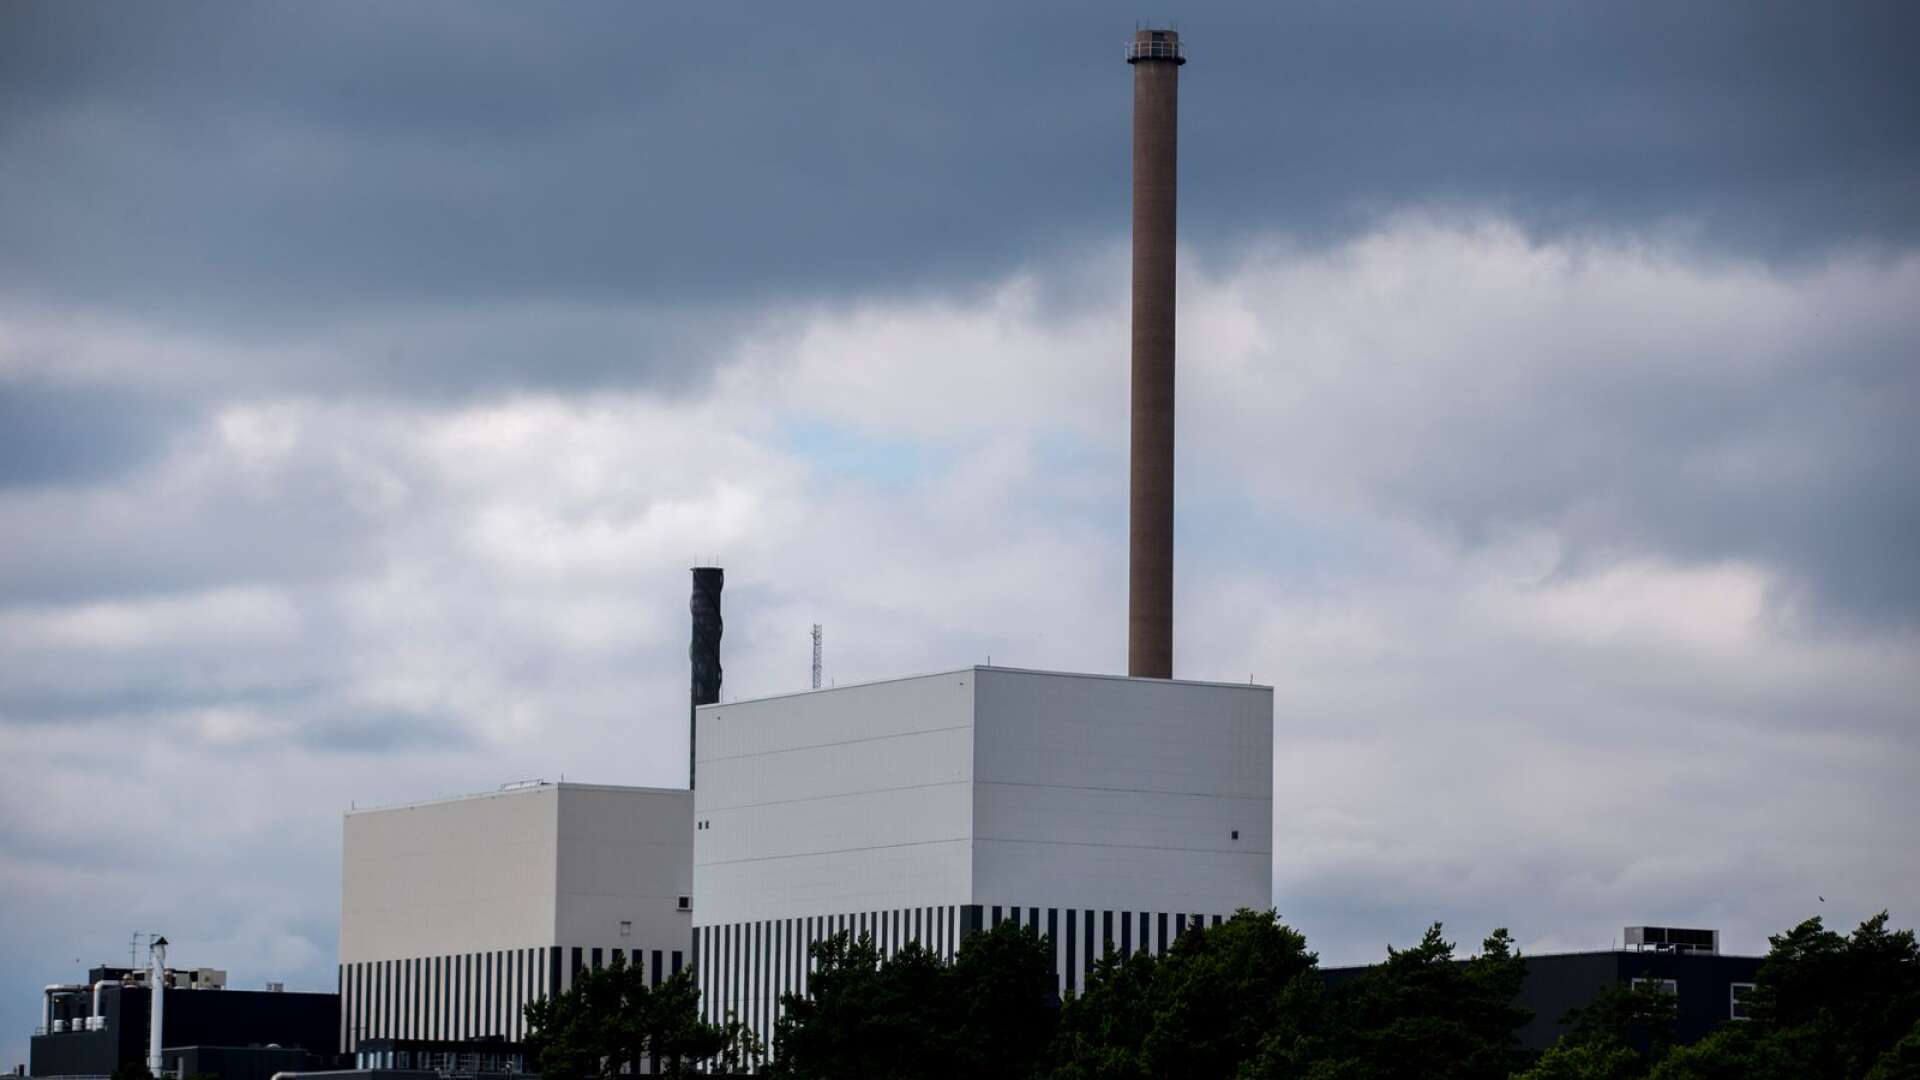 Ytterligare fyra reaktorer, två i Oskarshamn 1 och 2 (bilden), samt Ringhals 1 och 2 är stängda och tagna ur drift, skriver Boo Nilsson. 